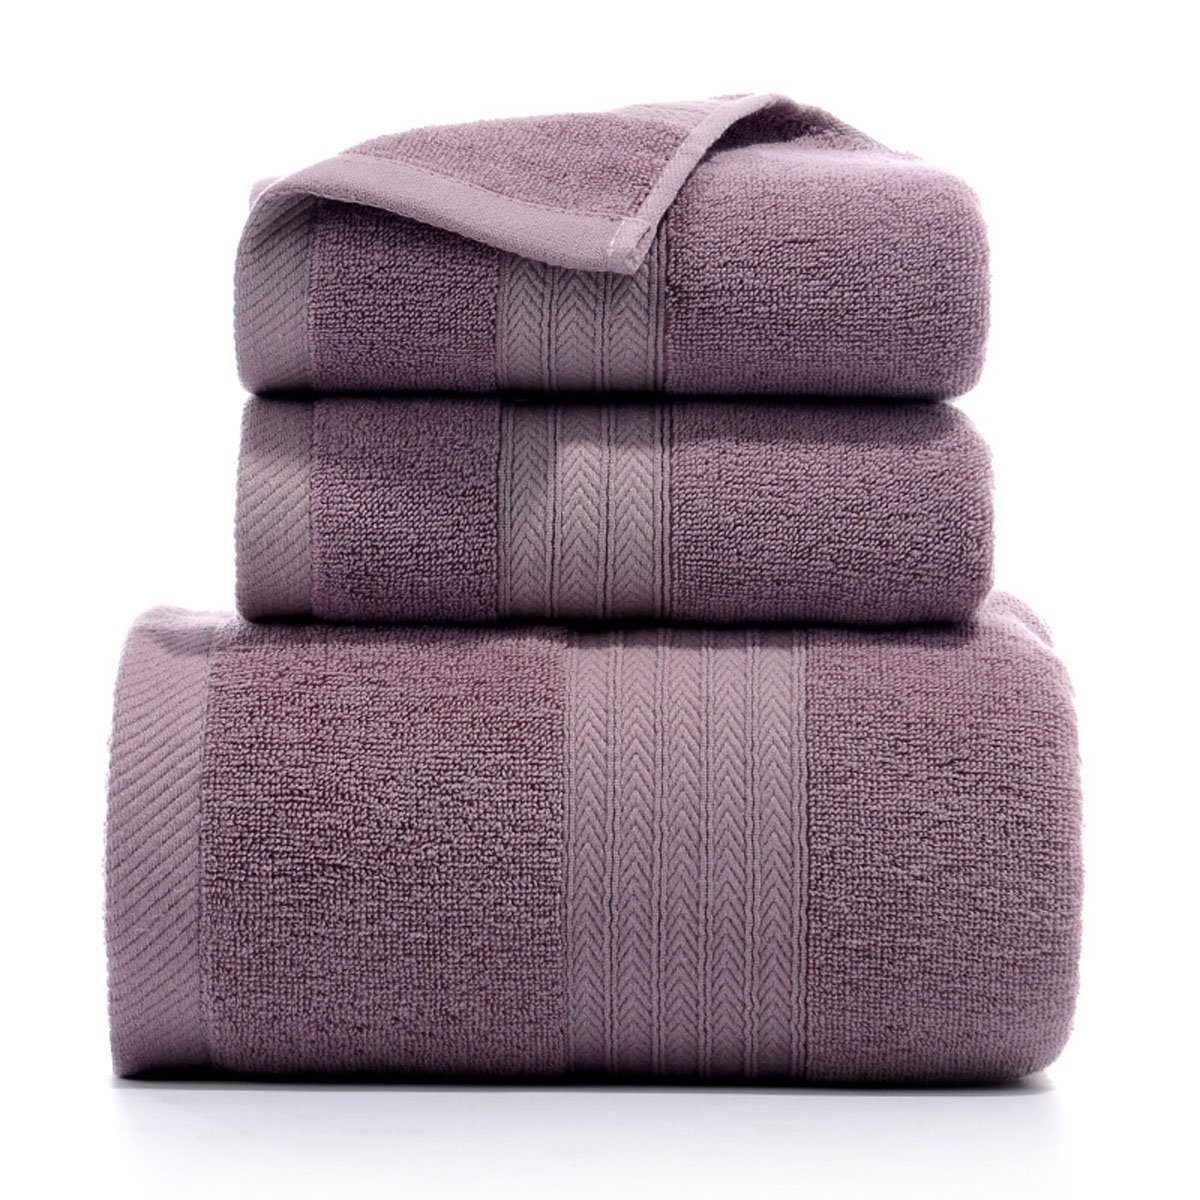 Jormftte Handtuch Set Handtücher Set-2xHandtuch,1xBadetuch,saugfähig und weich,für zu Hause Violett